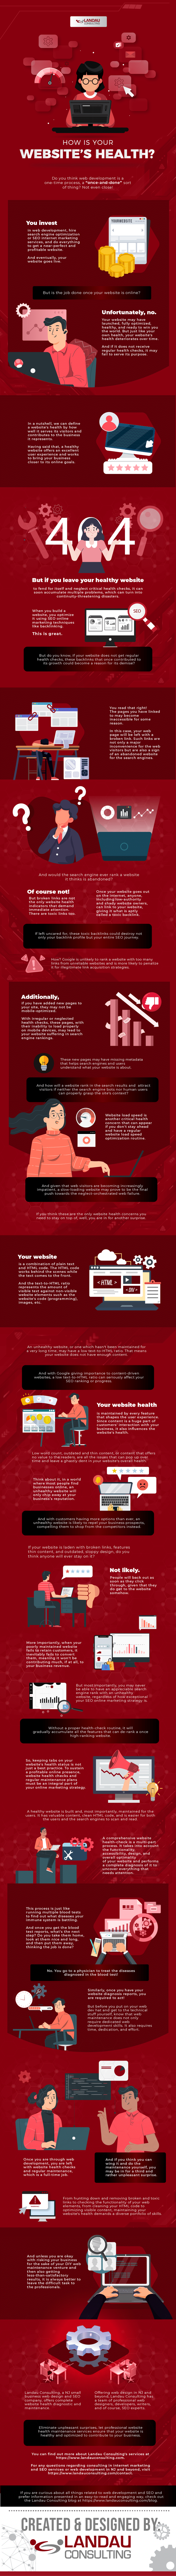 How is Your Website’s Health